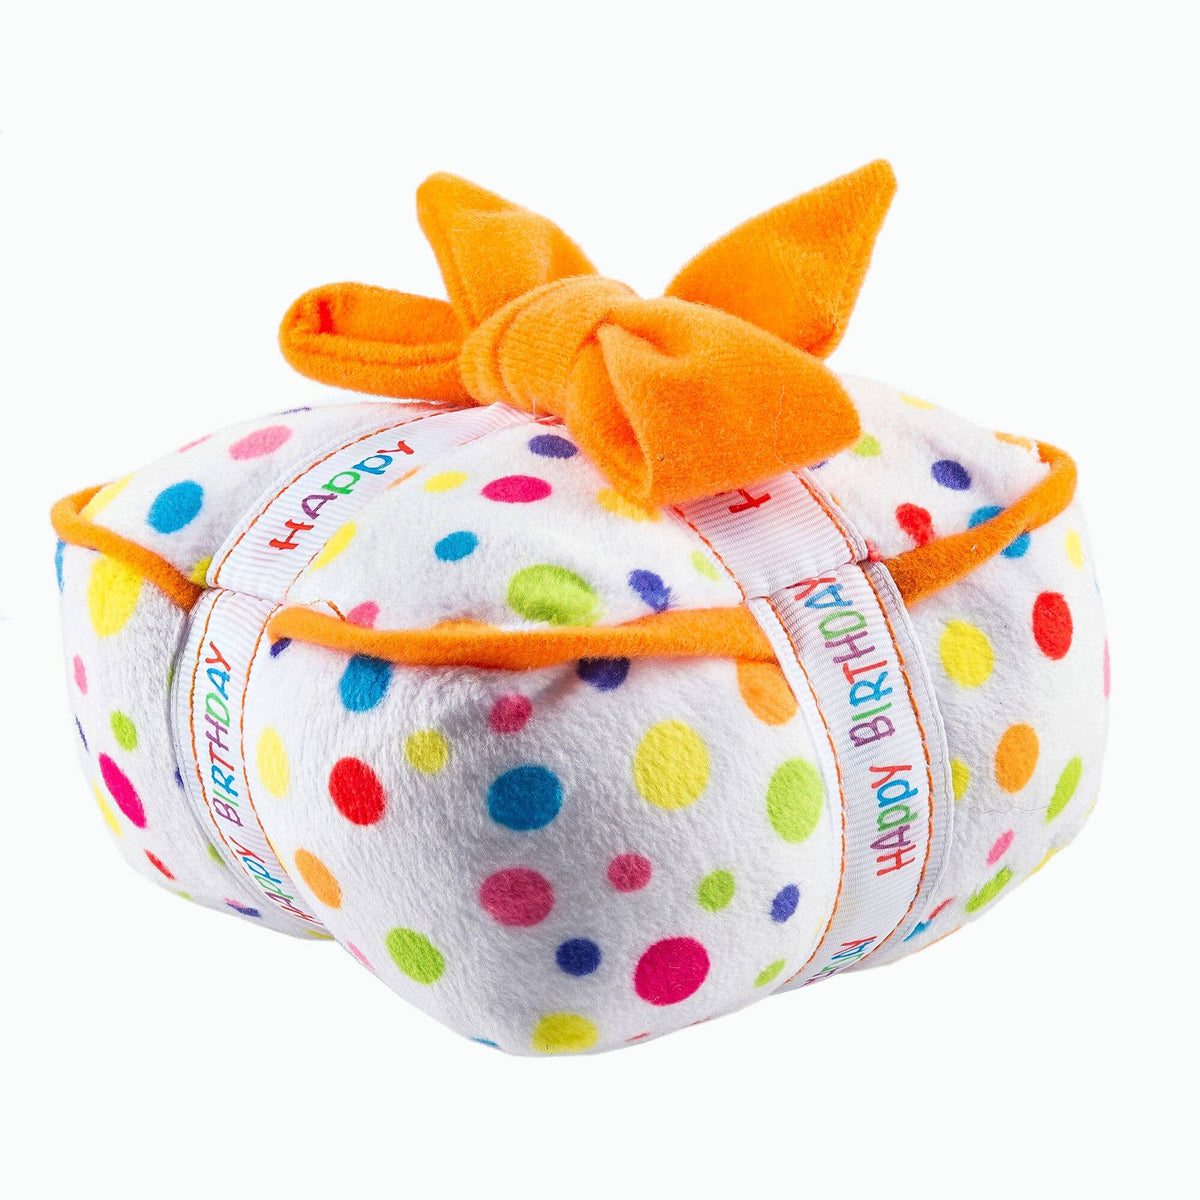 Happy Birthday Gift Box Squeaker Dog Toy